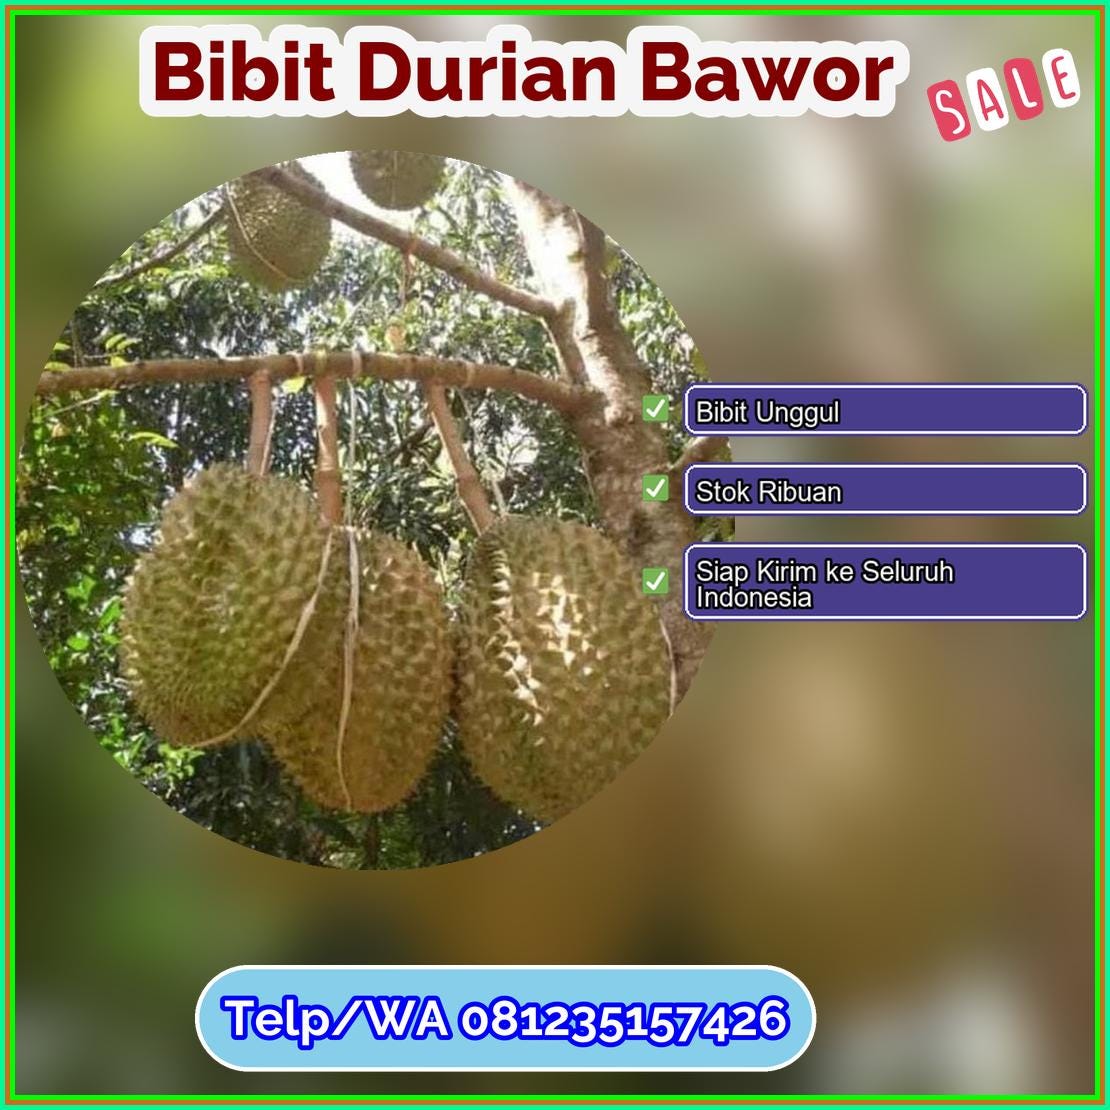 Harga Bibit Durian Bawor Kota Sungai Penuh